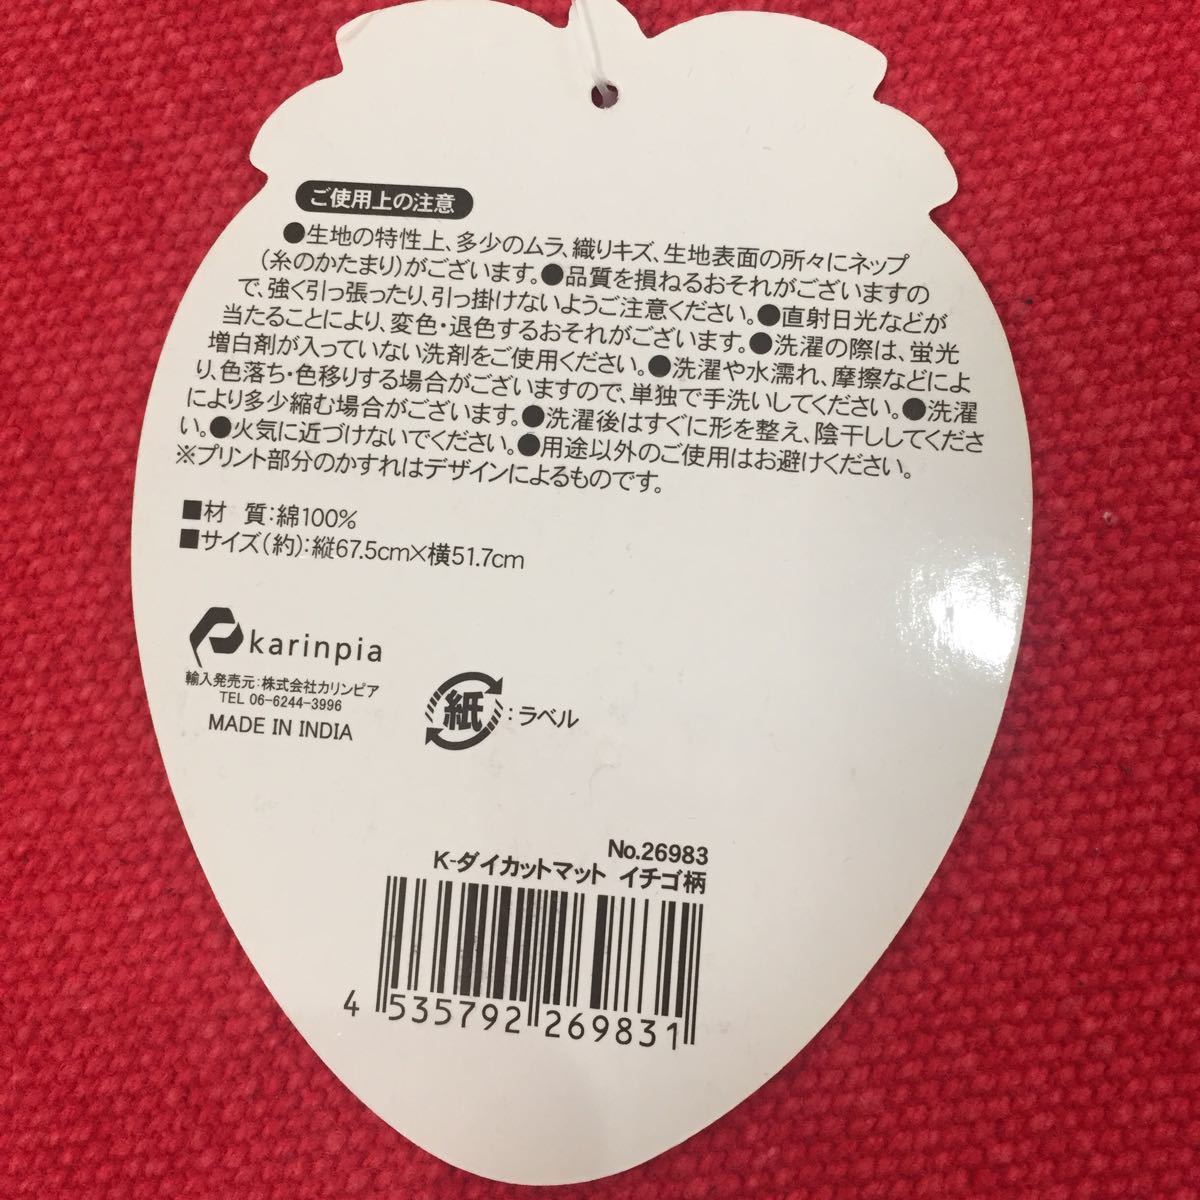 【新品】ダイカットマット イチゴ型☆ かわいい オシャレ 赤 レッド 大きめ